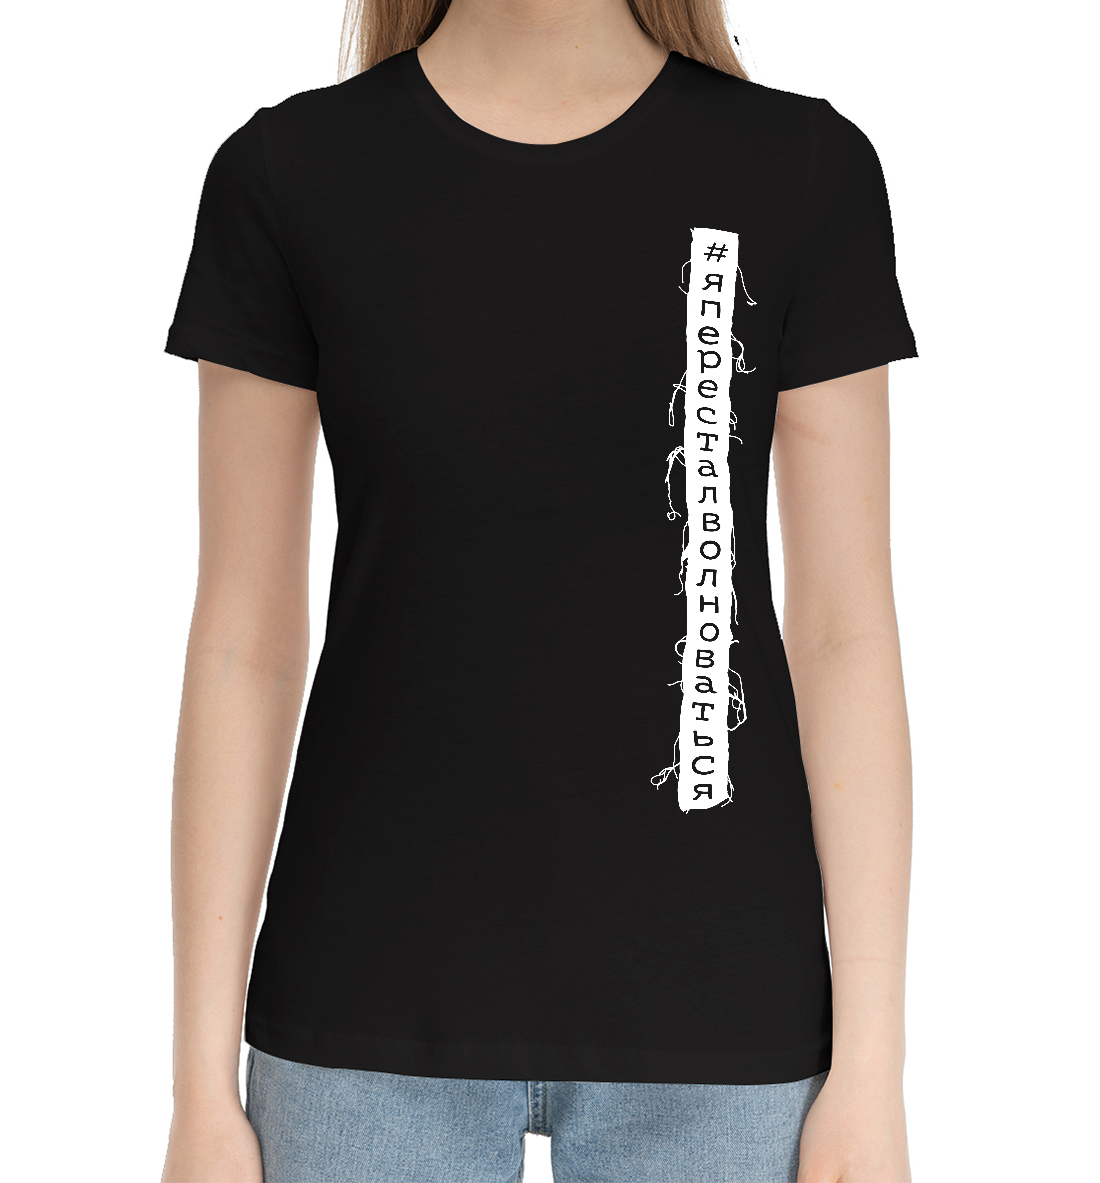 Женская Хлопковая футболка с надписью #Япересталволноваться, артикул APV-840671-hfu-1mp